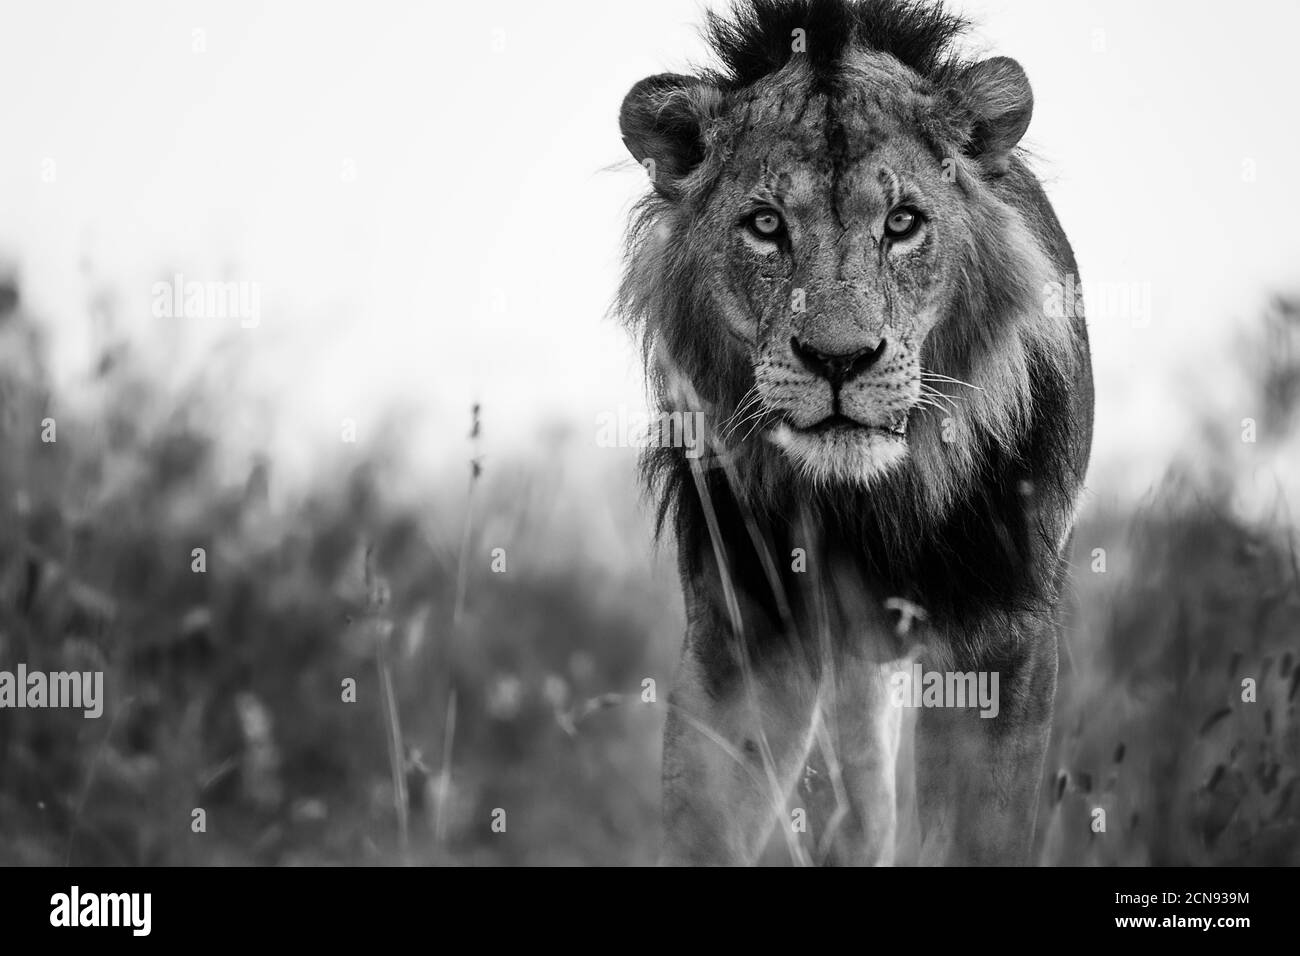 Retrato en blanco y negro de un León mirando a la cámara, Parque Nacional de Nairobi, Kenia Foto de stock